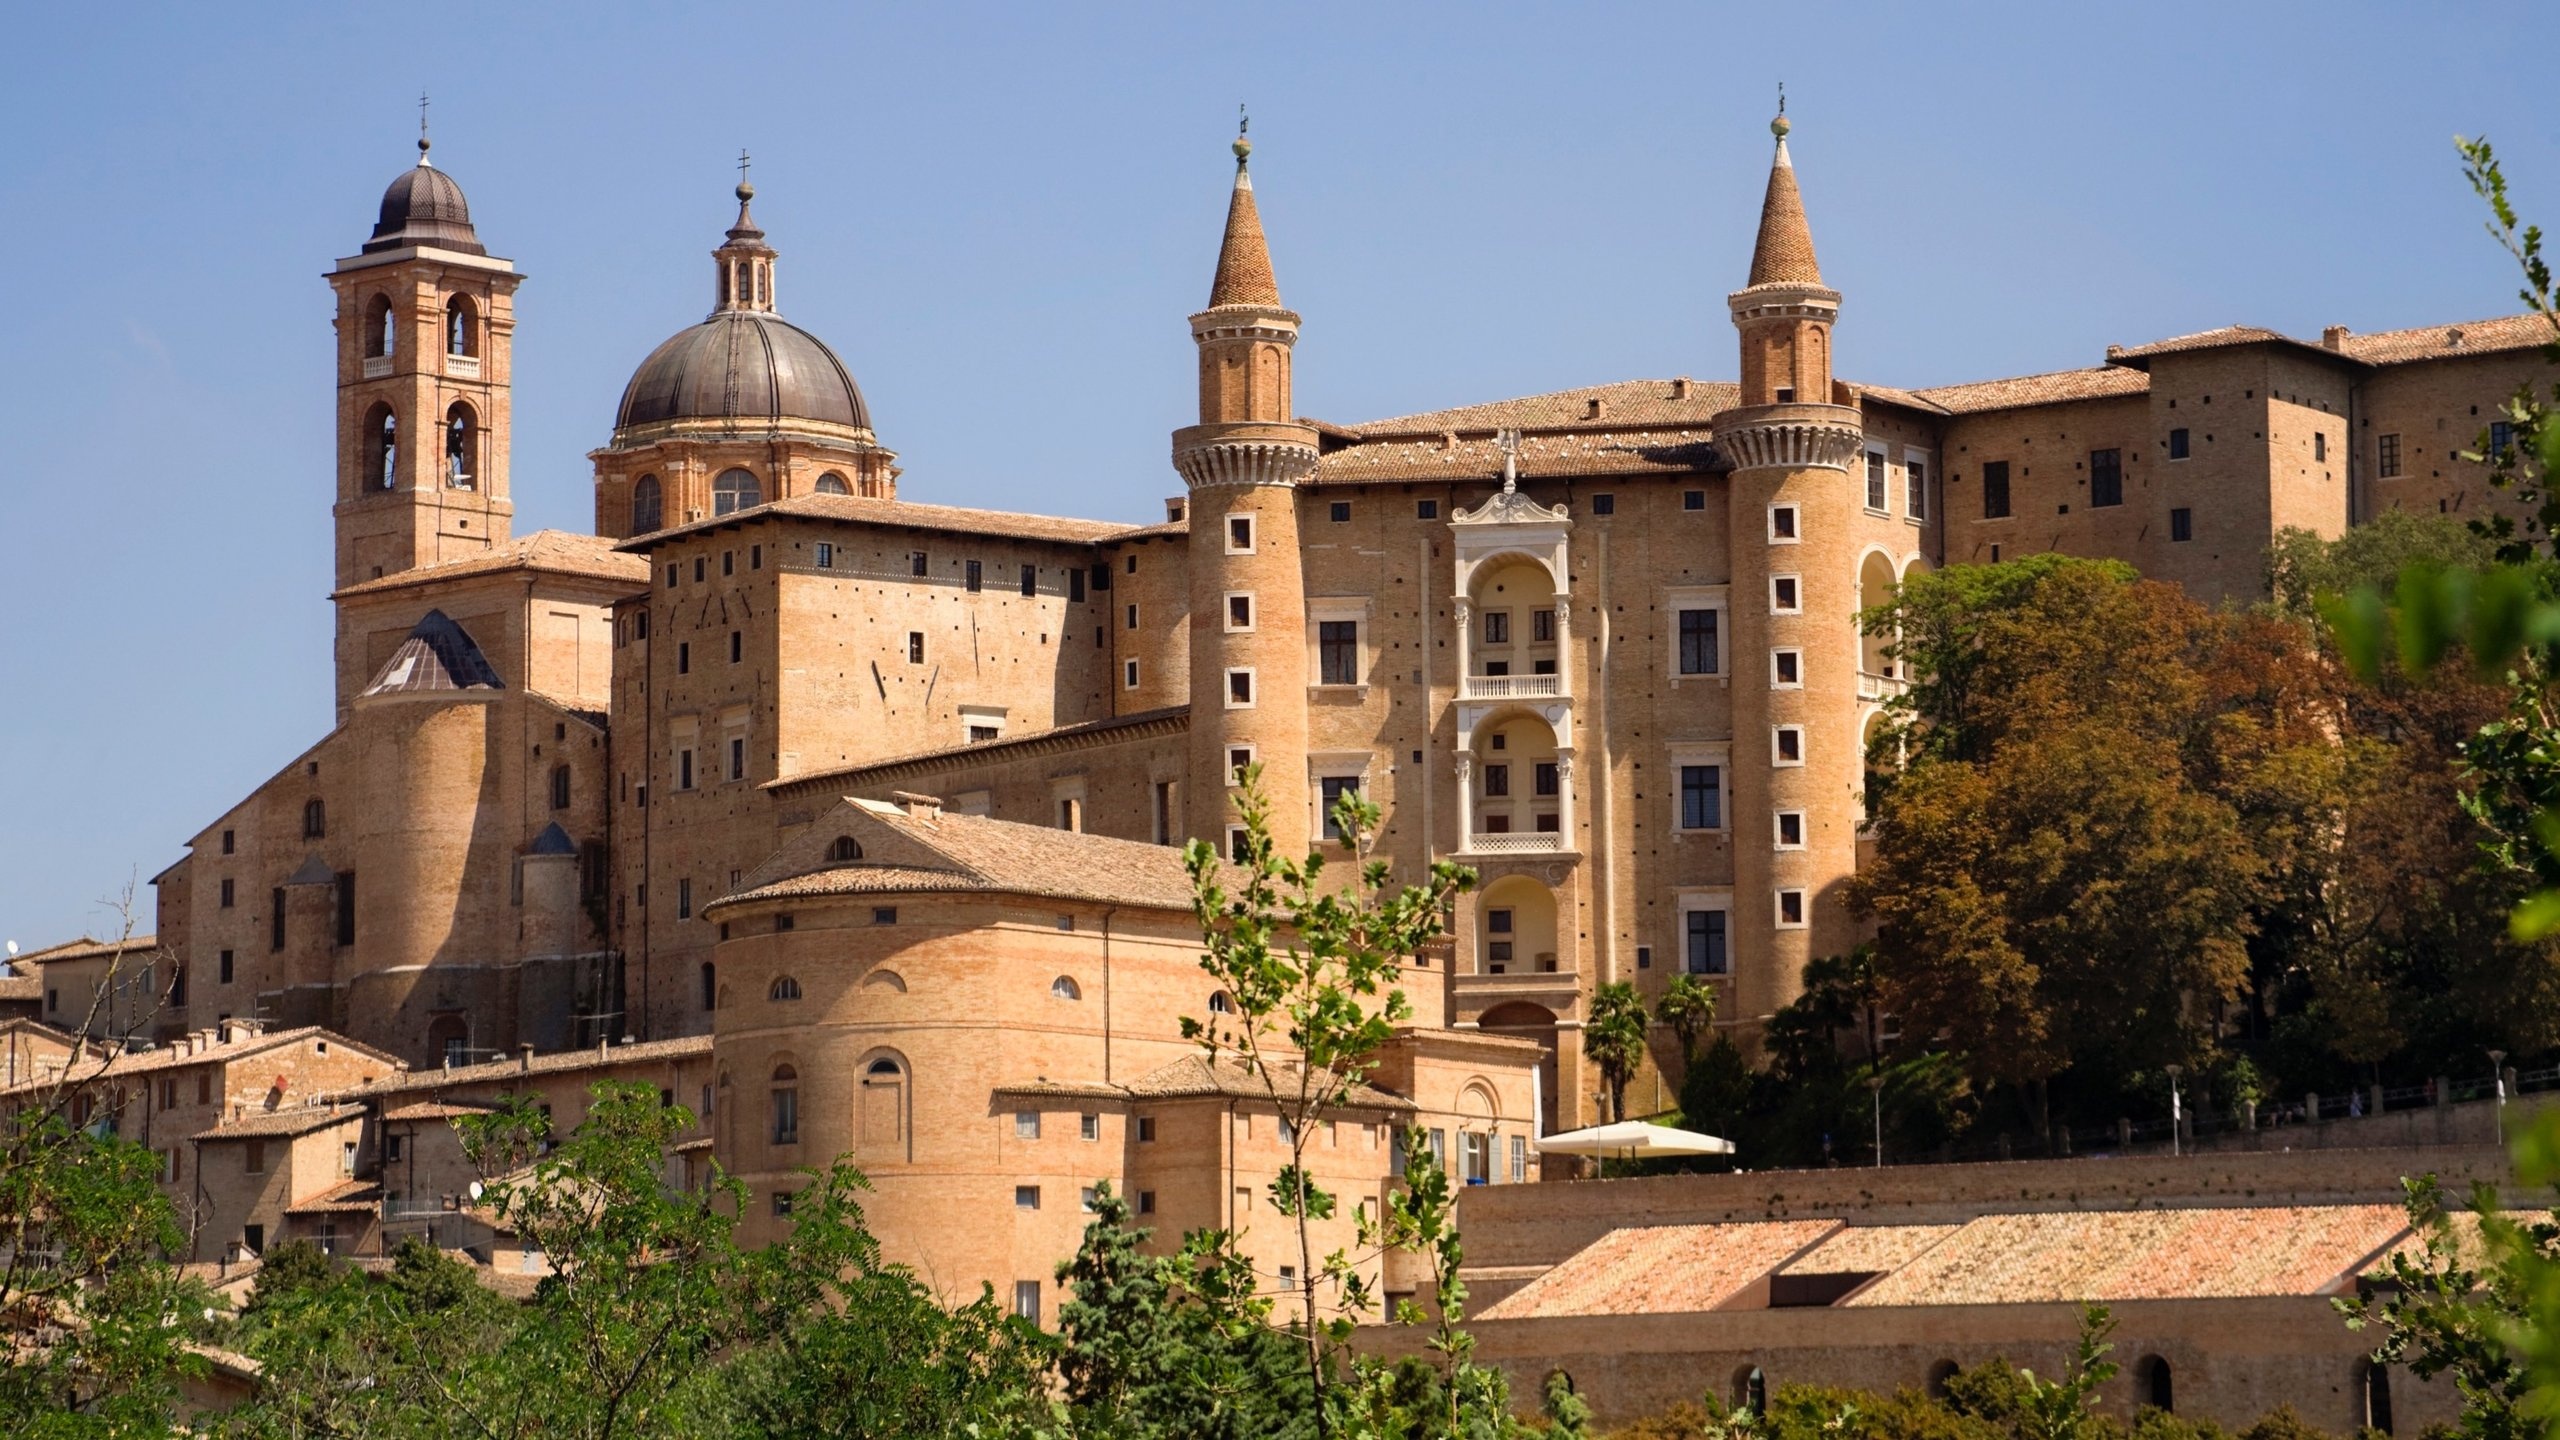 Ferienwohnung Urbino, Italy vacation, 2560x1440 HD Desktop